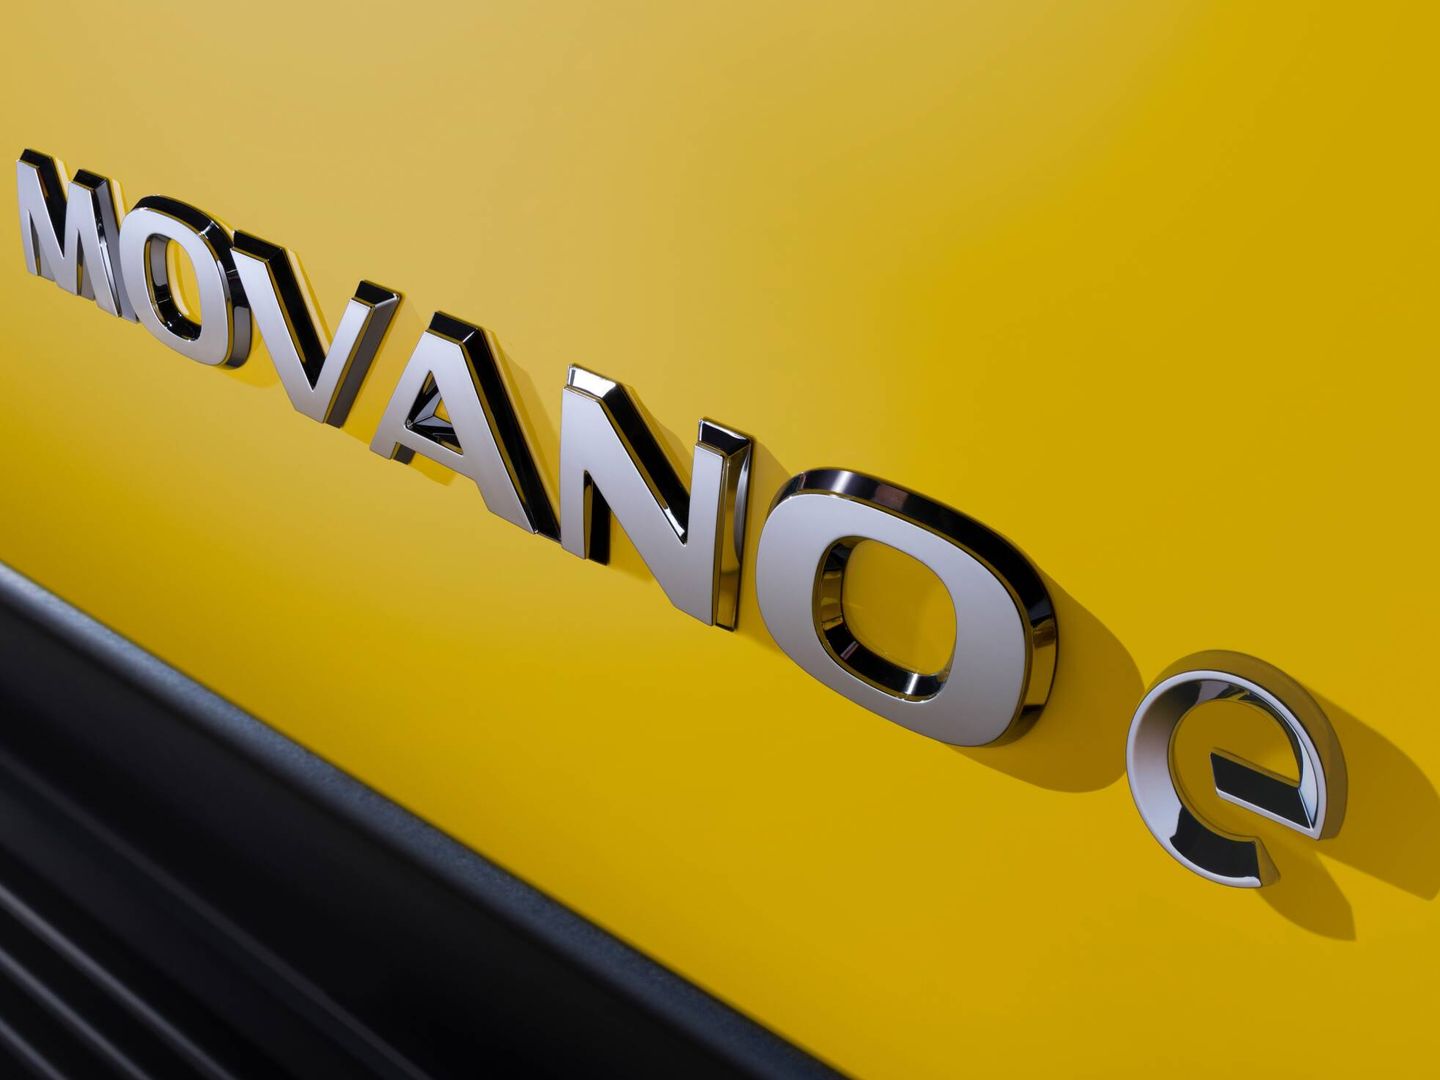 La versión eléctrica, denominada Movano-e, tiene un motor de 122 CV y permite elegir entre dos tamaños de batería: 37 y 70 kWh.